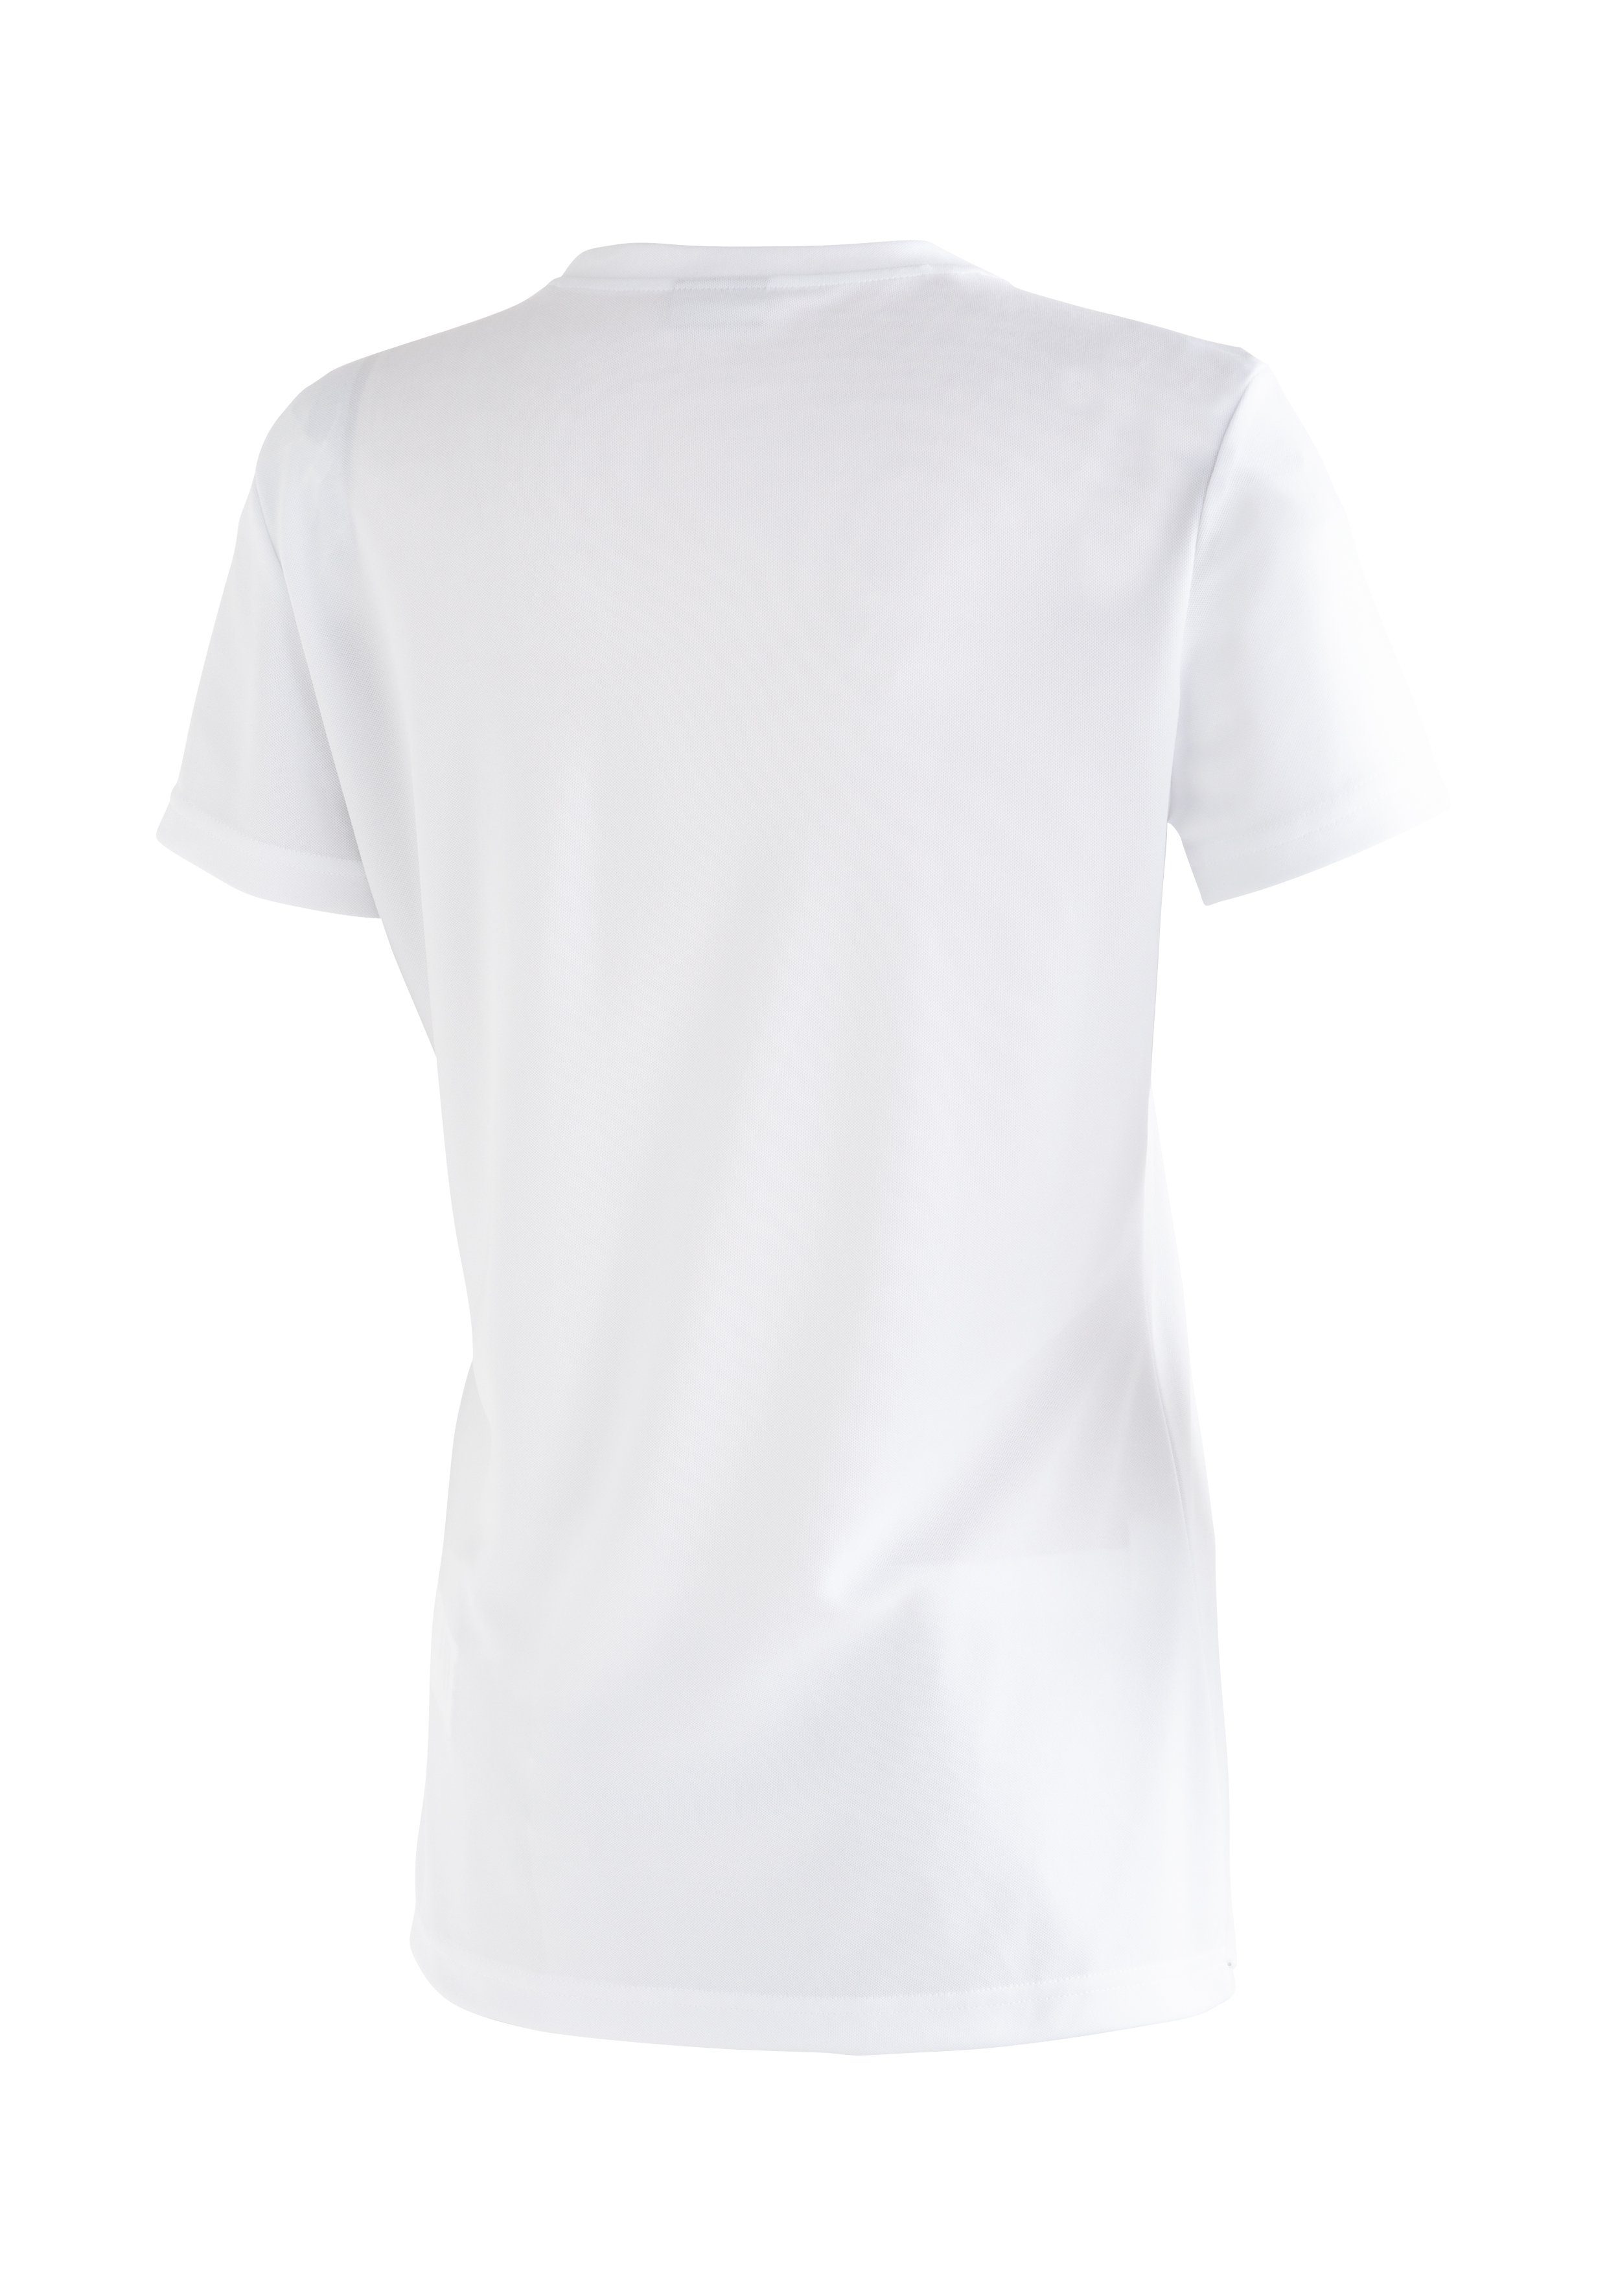 Print hoher vielseitiges Waltraut weiß T-Shirt Maier Funktional Passformstabilität Sports Funktionsshirt mit